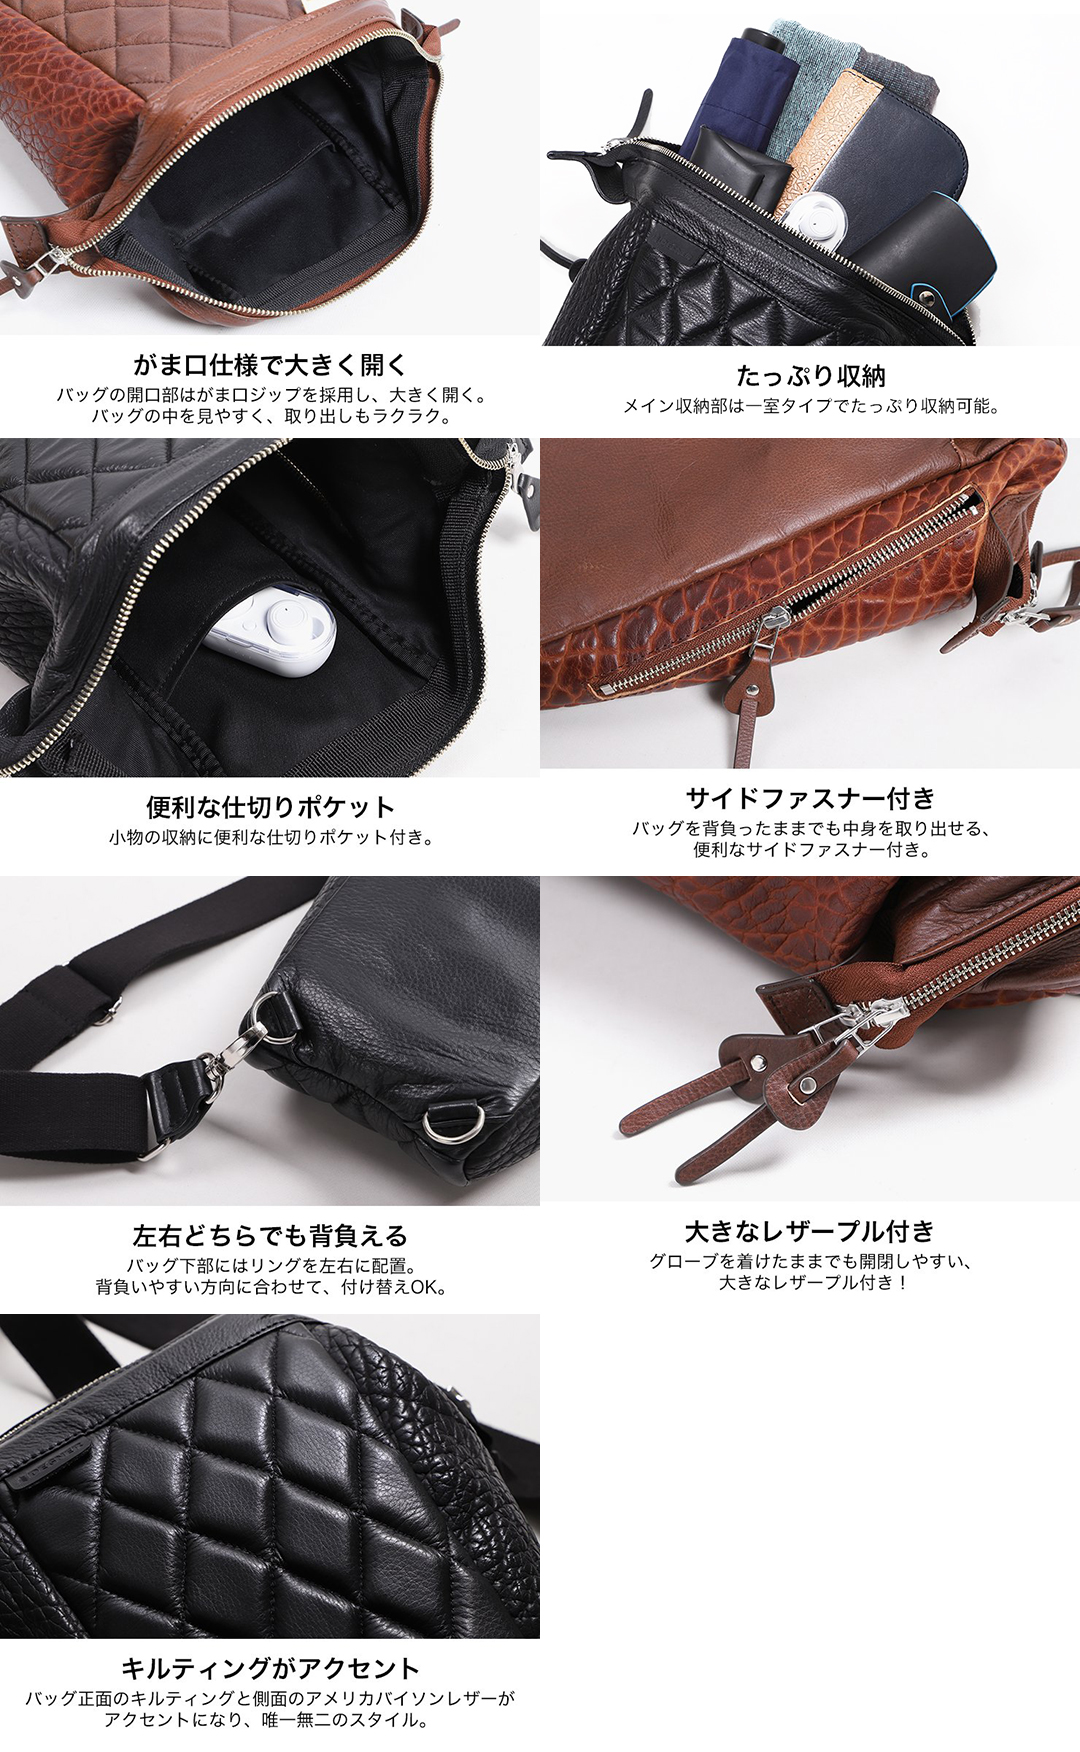 デグナーレザーボディバッグ がま口 本革 タスマンブラウン DEGNER Leather Body Bag Tasman Brown / パインバレー